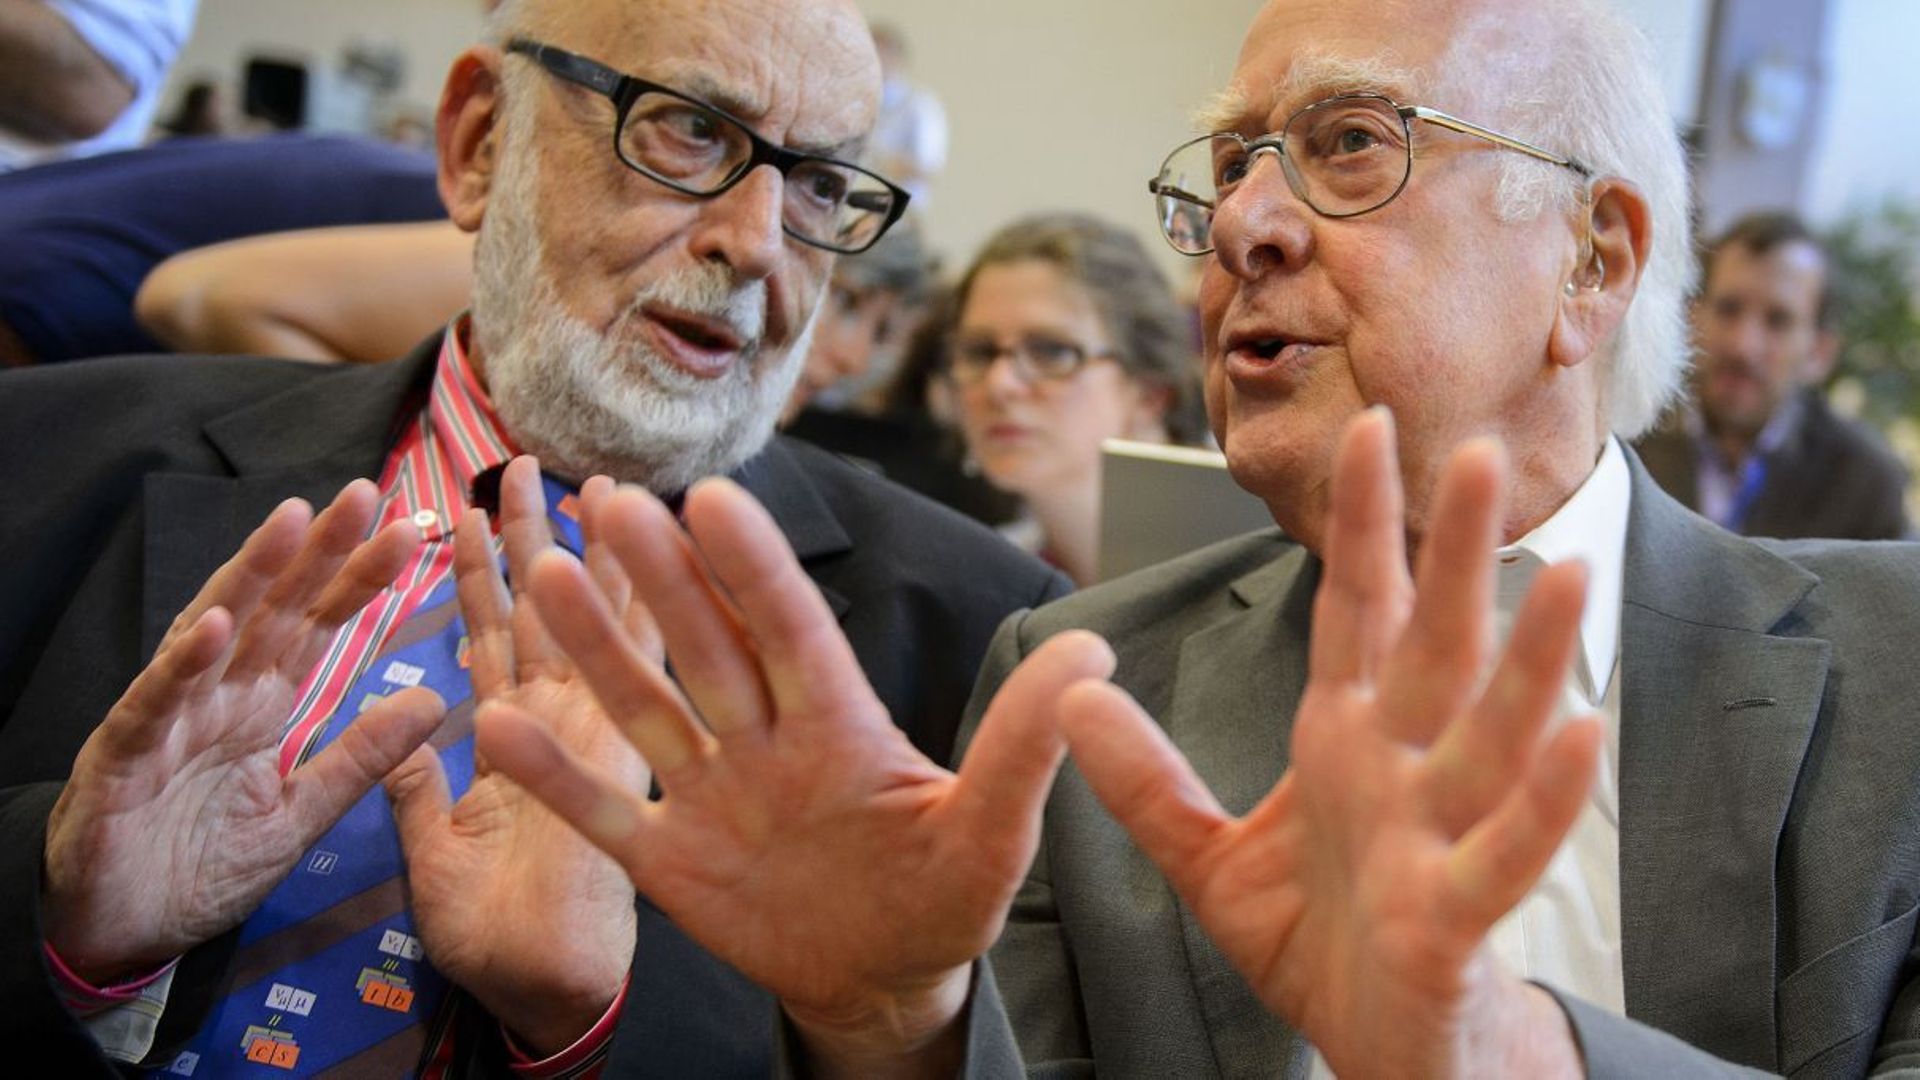 François Englert et Peter Higgs ont assisté à la validation par l'expérience de ce qu'ils avaient théorisé il y a près de 50 ans